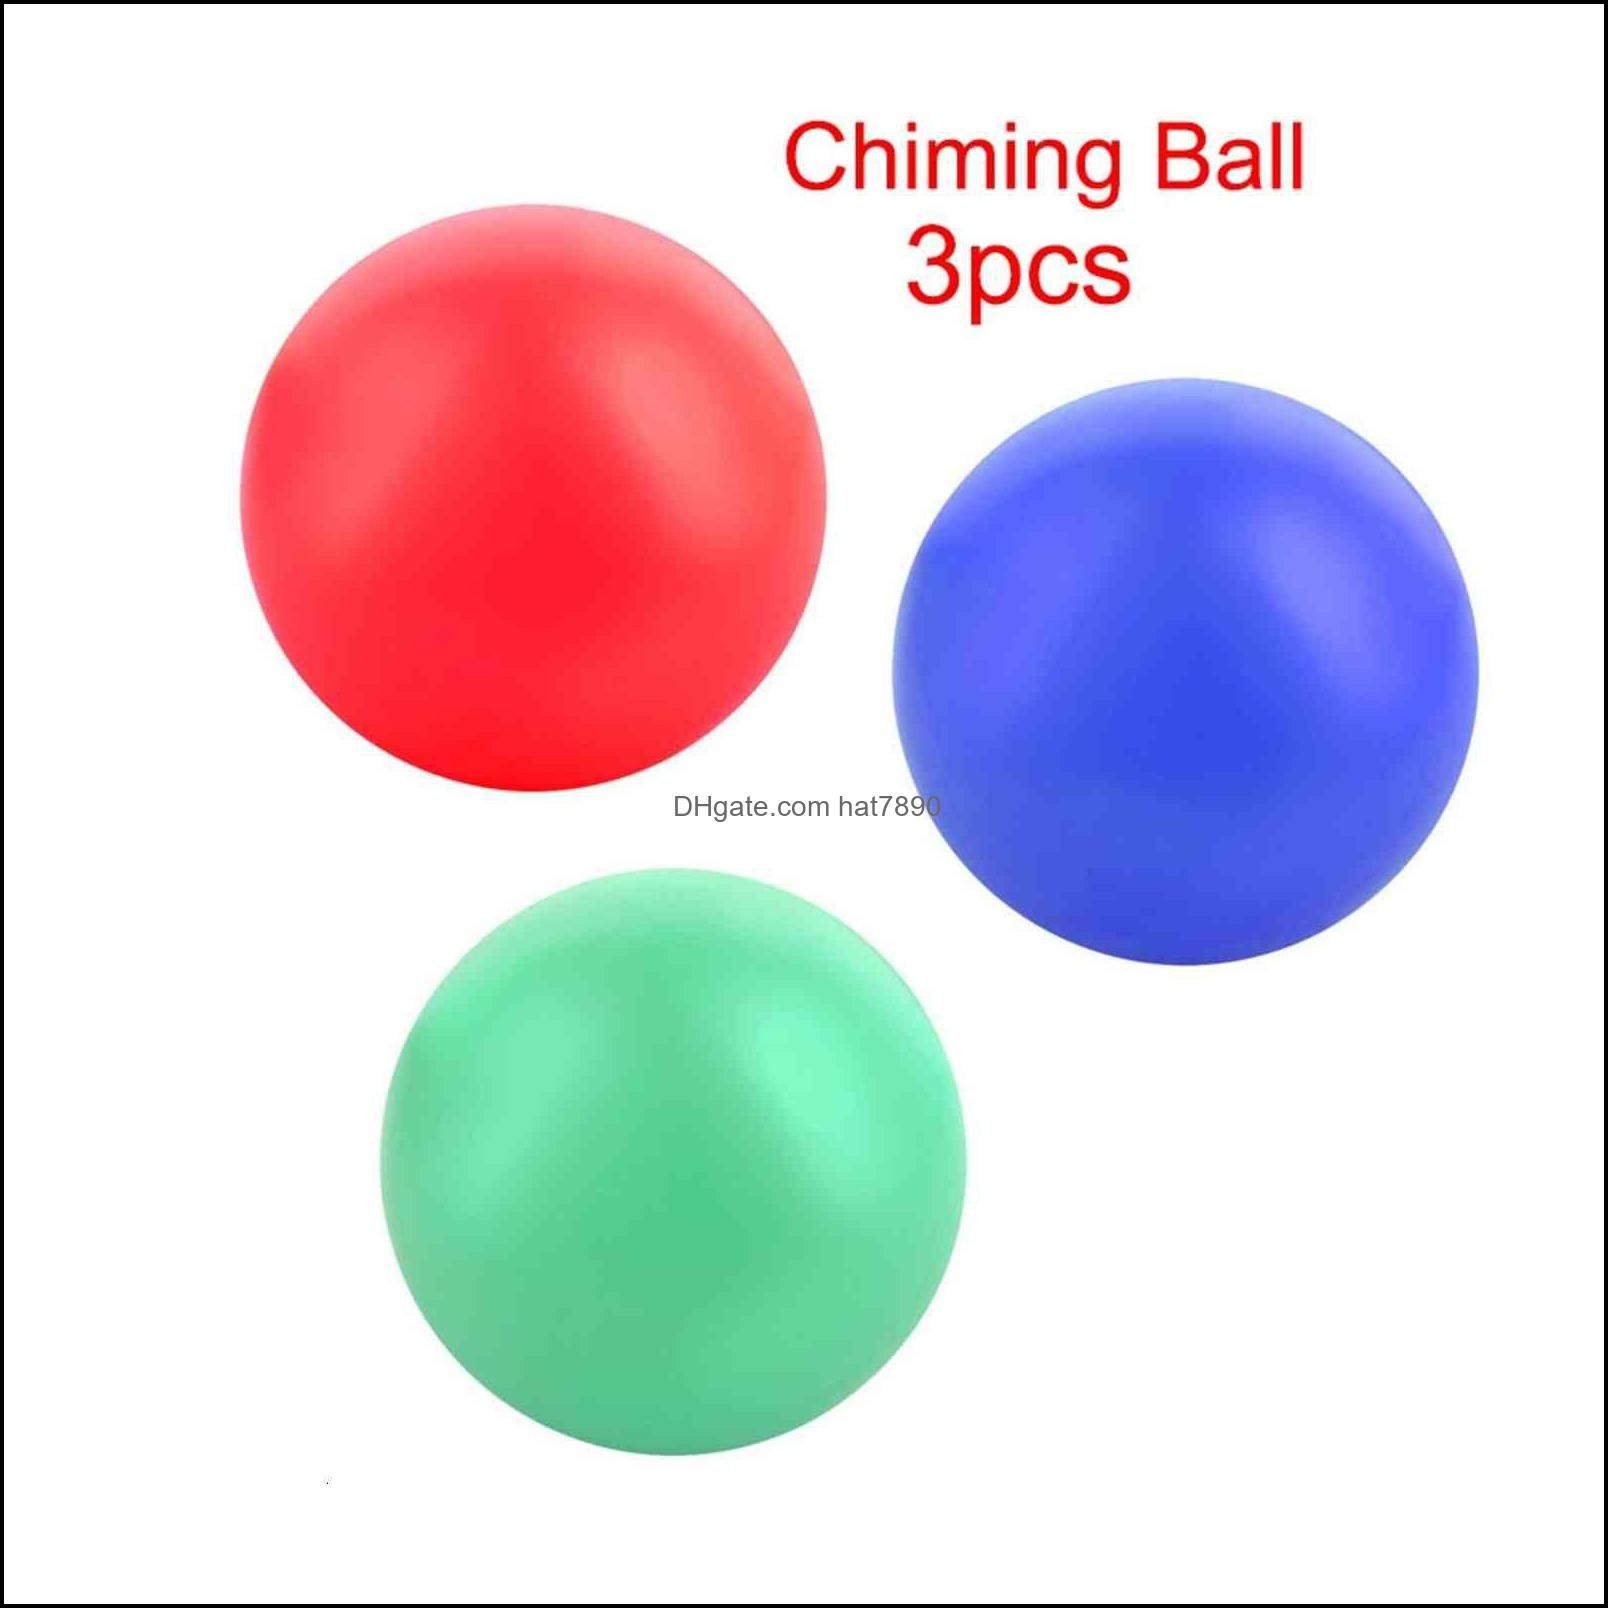 Chiming Ball 3Pcs